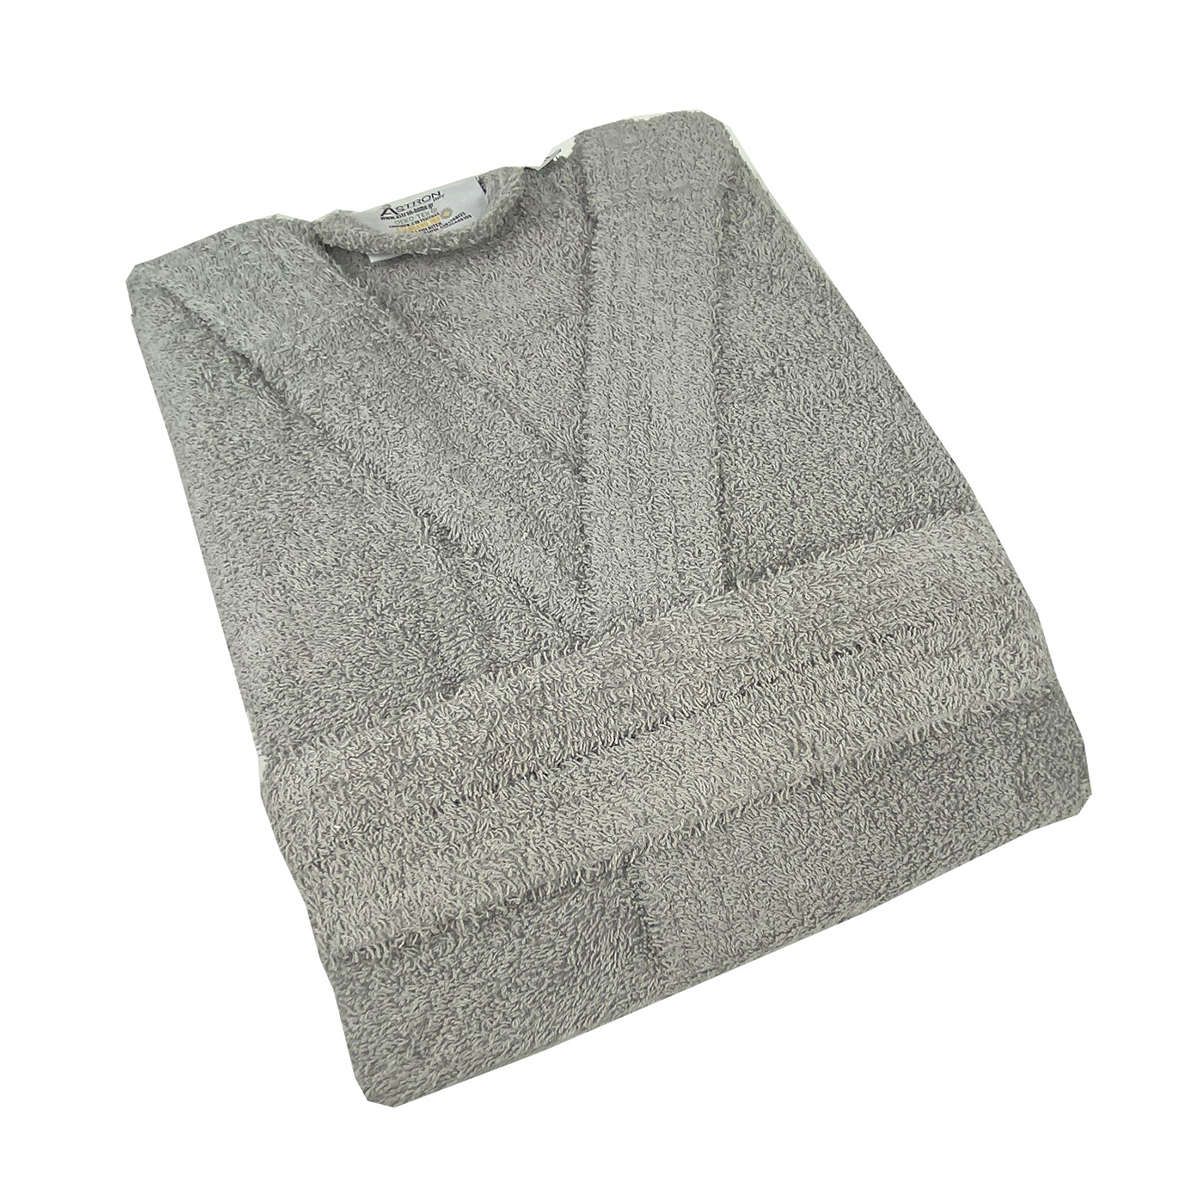 Μπουρνούζι με κουκούλα grey astron